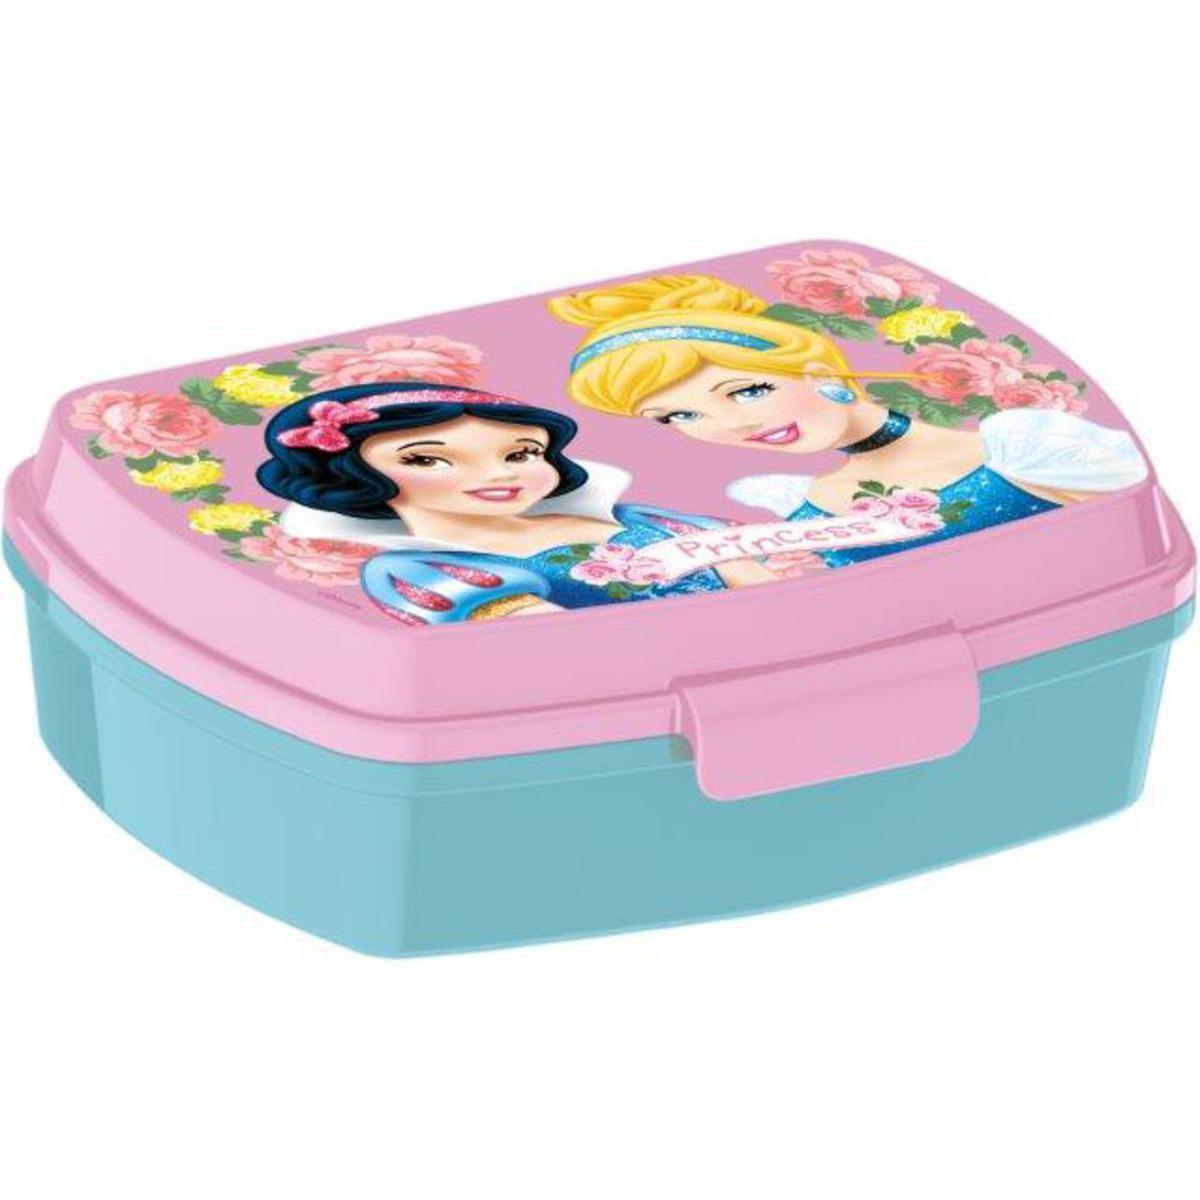 Boîte à goûter Princesse - Plastique - 17 x 14 x 5.5 cm - Multicolore